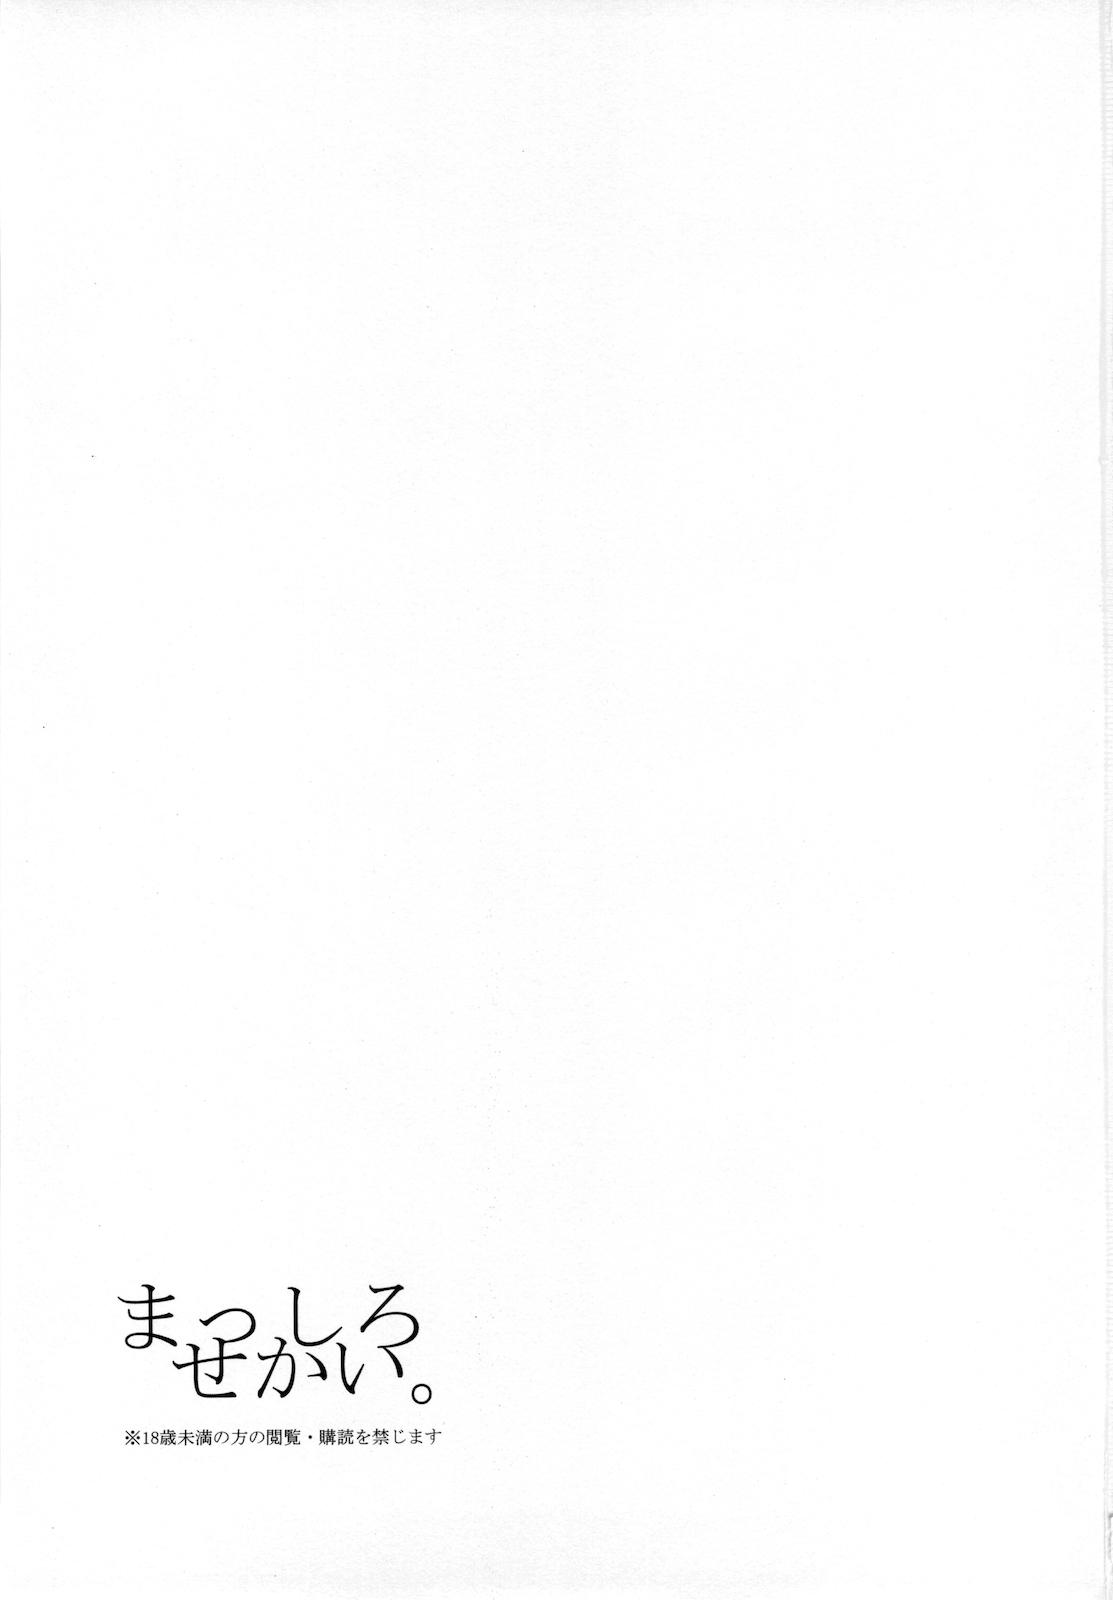 Culazo Masshiro Sekai - Seiken densetsu 3 Large - Page 2